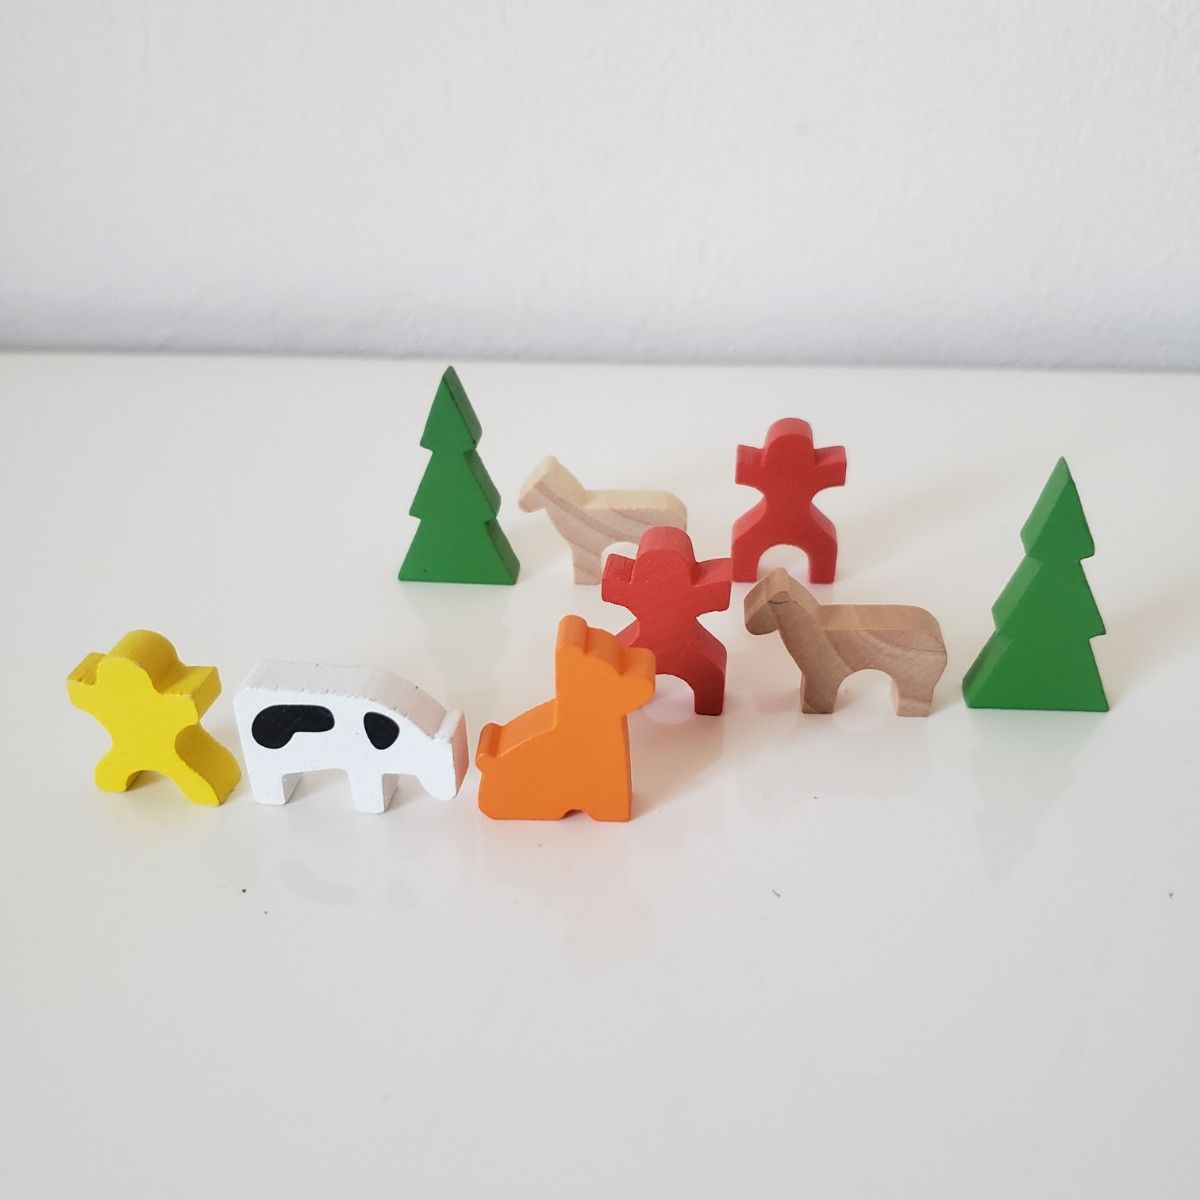 【お買得】『アソビグリコ』/グリコ木製おもちゃ/ちっちゃな木のおもちゃ/知育玩具◎